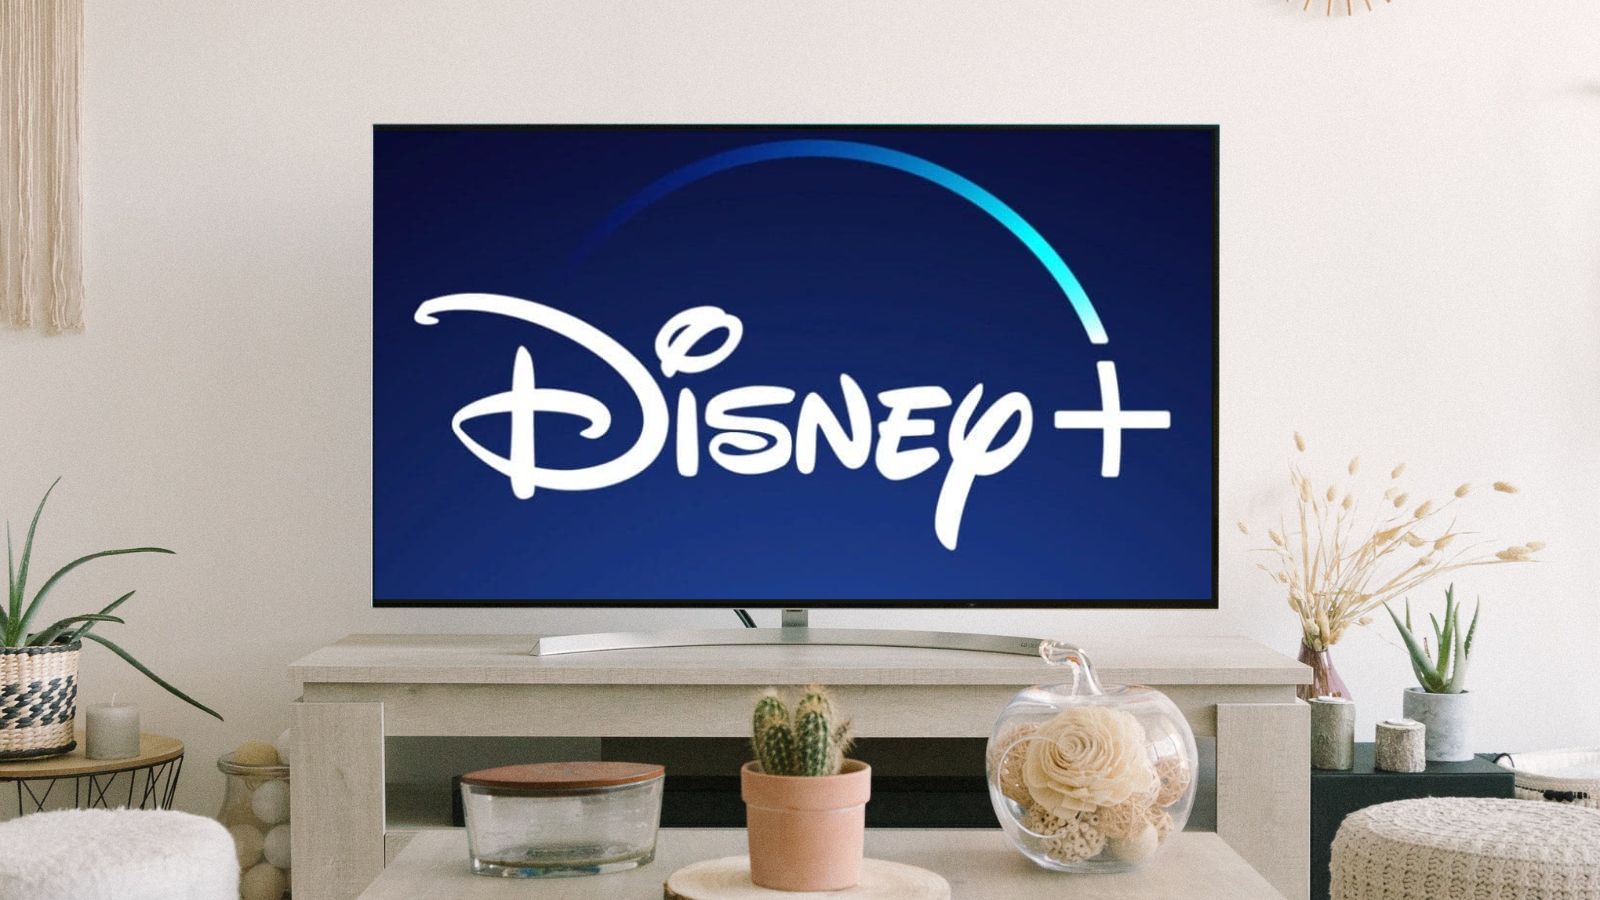 Disney+: la nuova offerta con abbonamento mensile a 1.99€ 